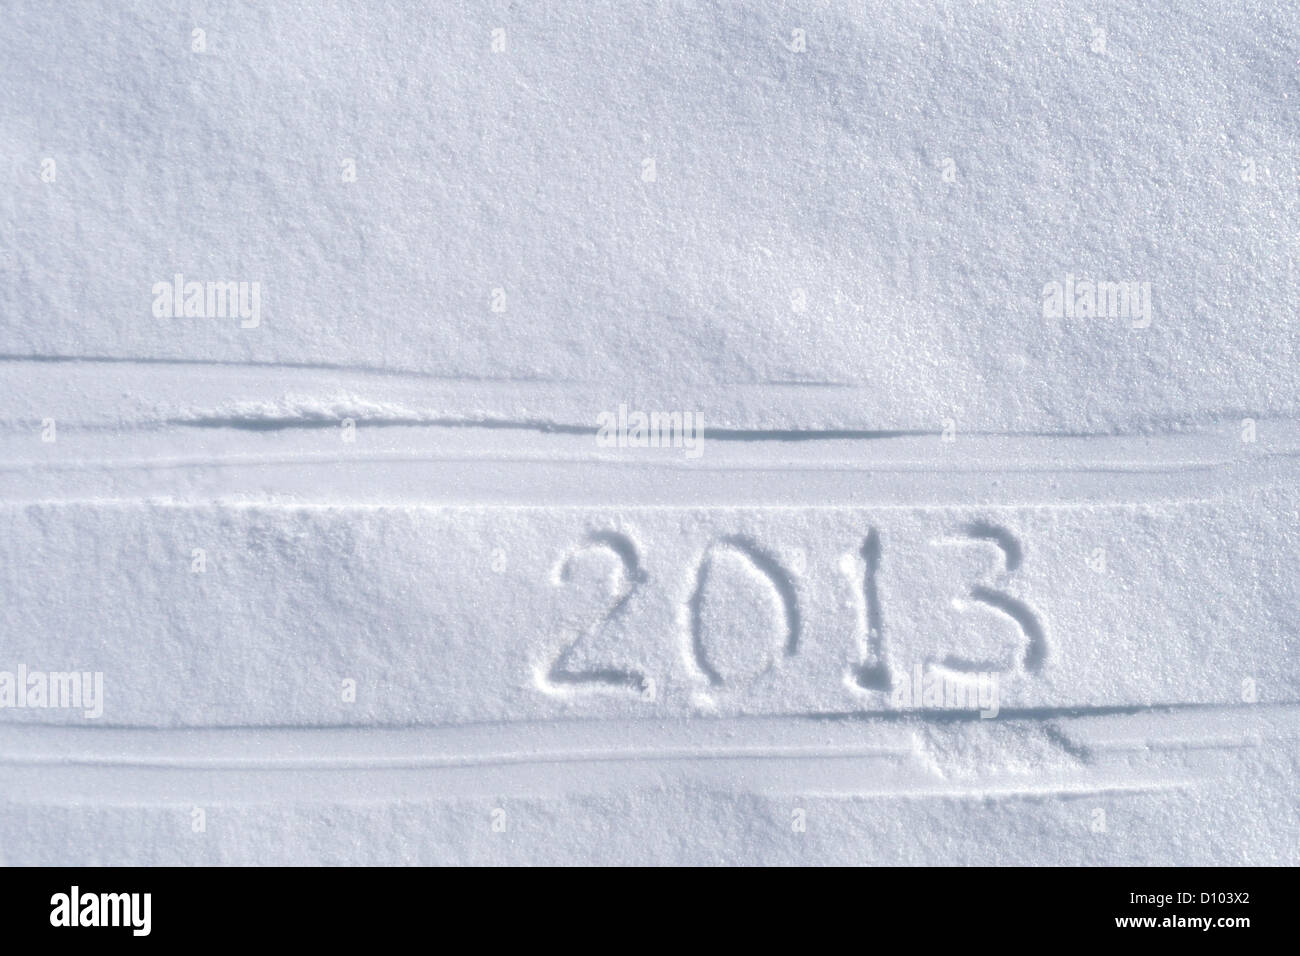 2013 texto escrito entre las pistas de esquí Foto de stock